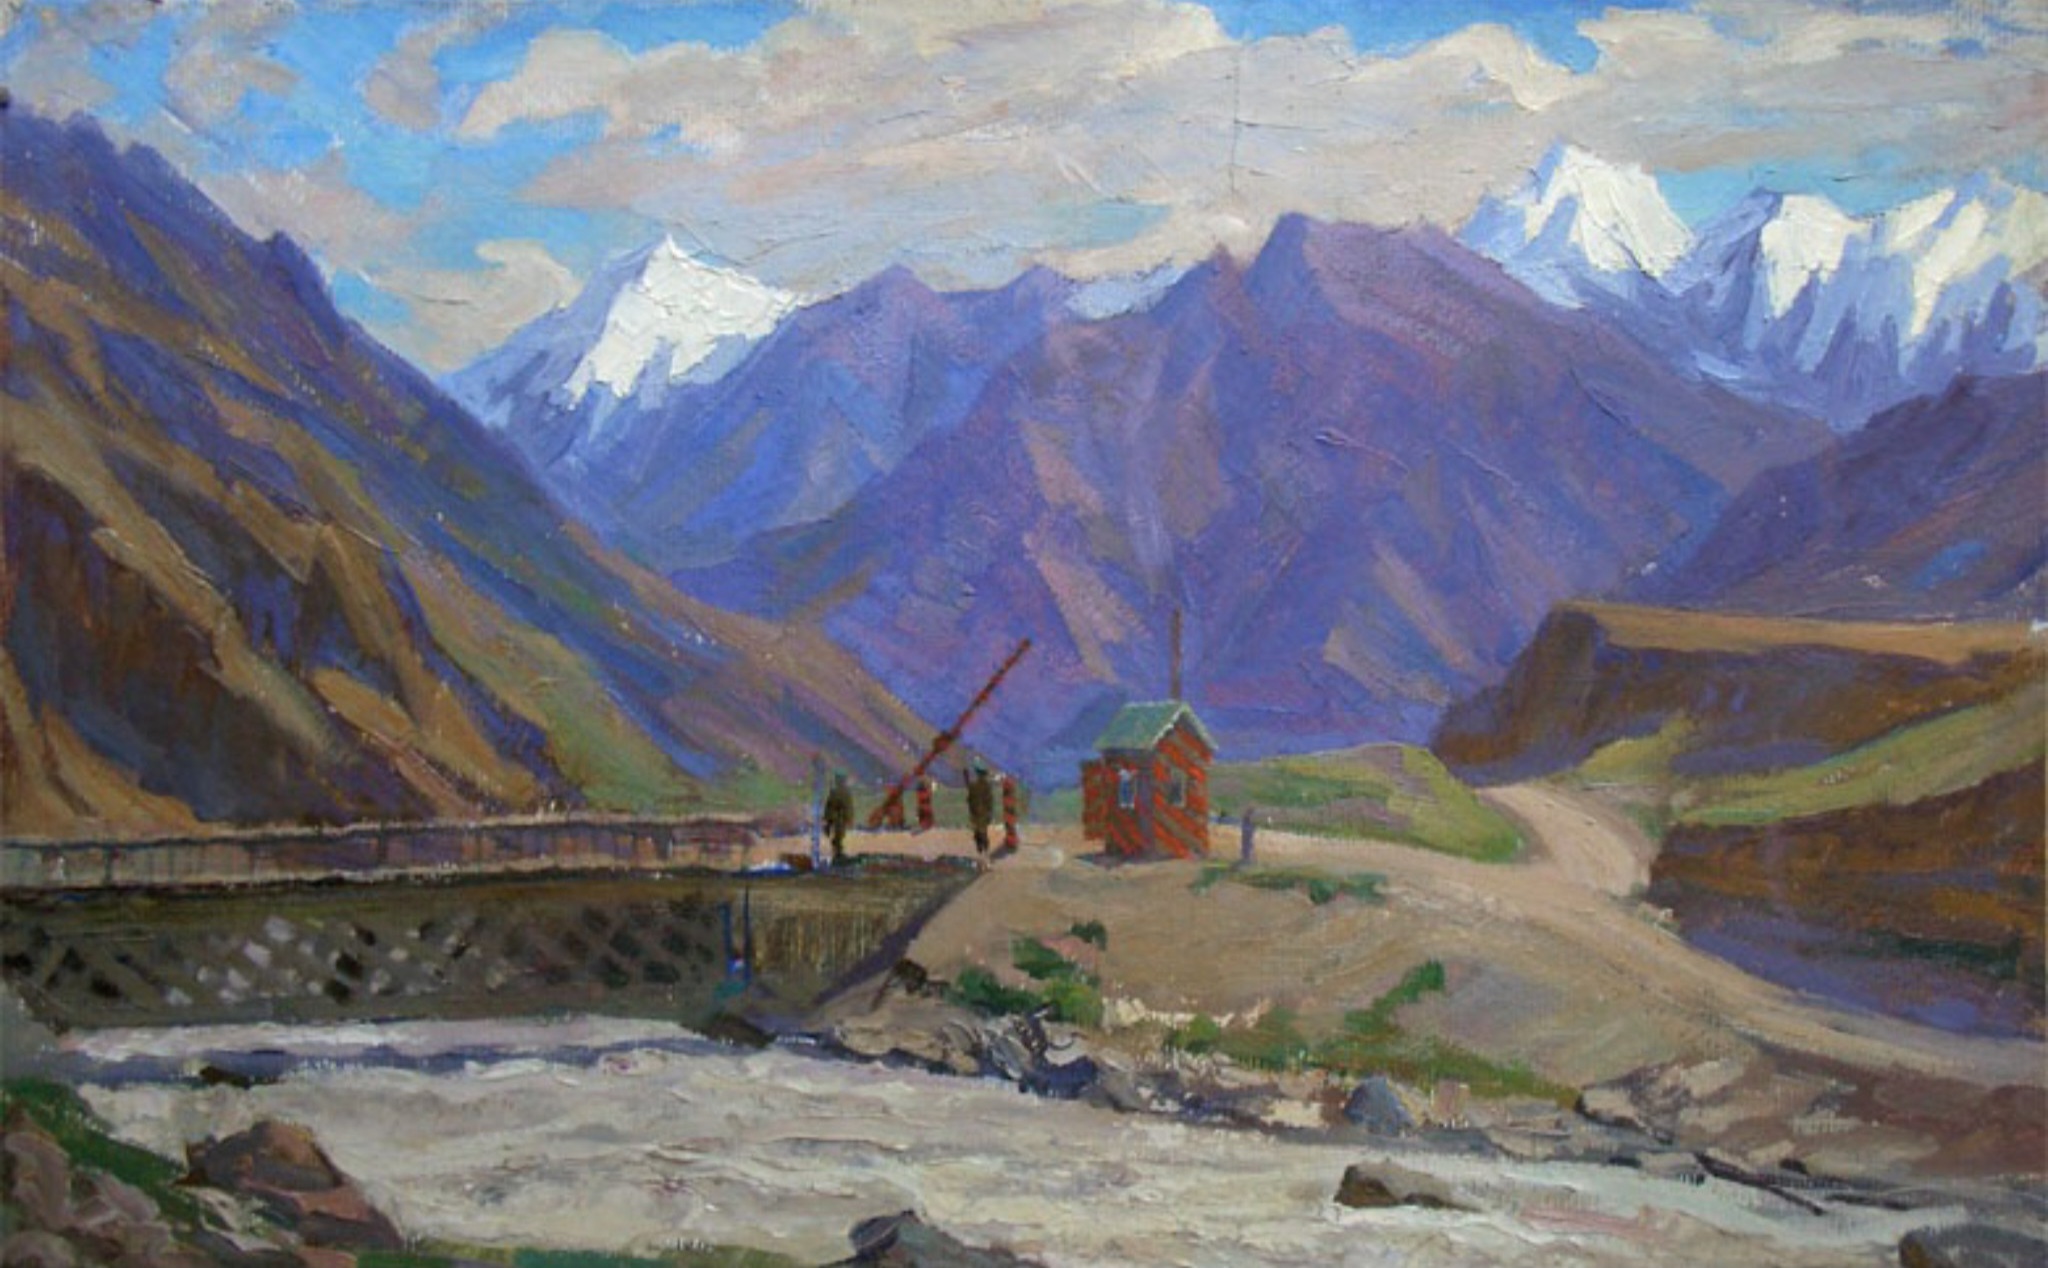 Т.Марченко. Пограничный пост в горах (фрагмент). 1976